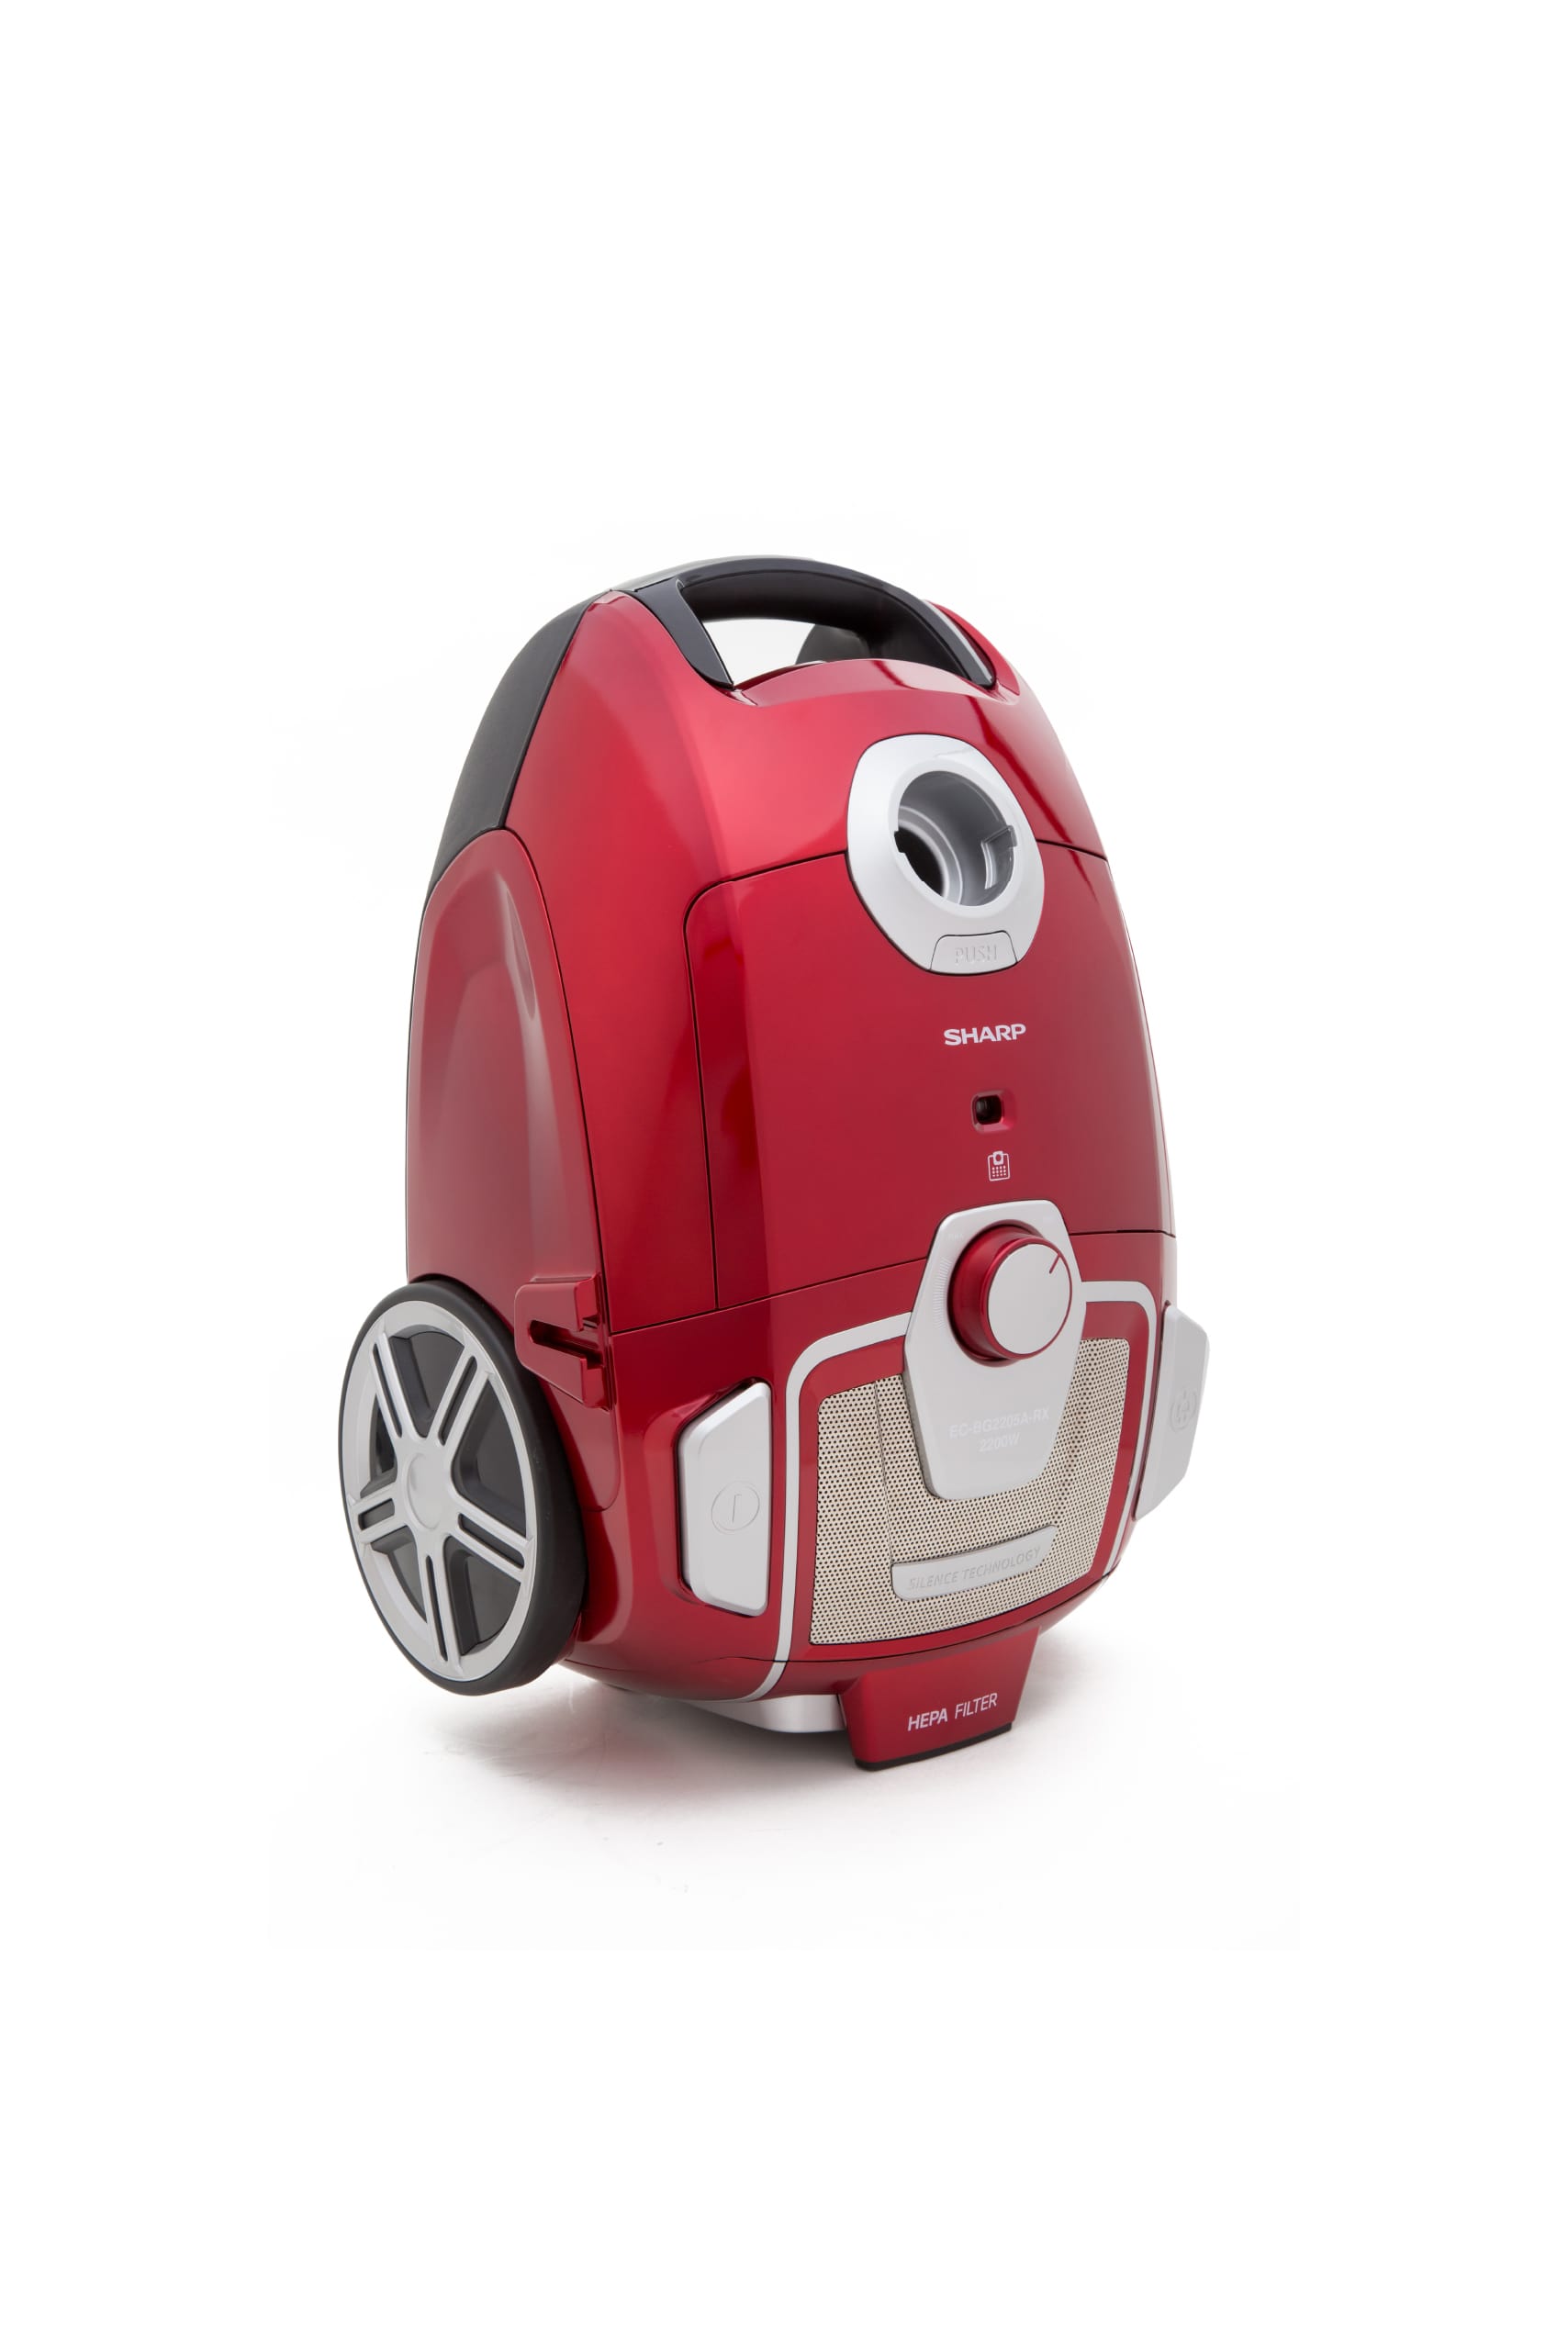 Sharp bag vacuum cleaner 2000 watts - red